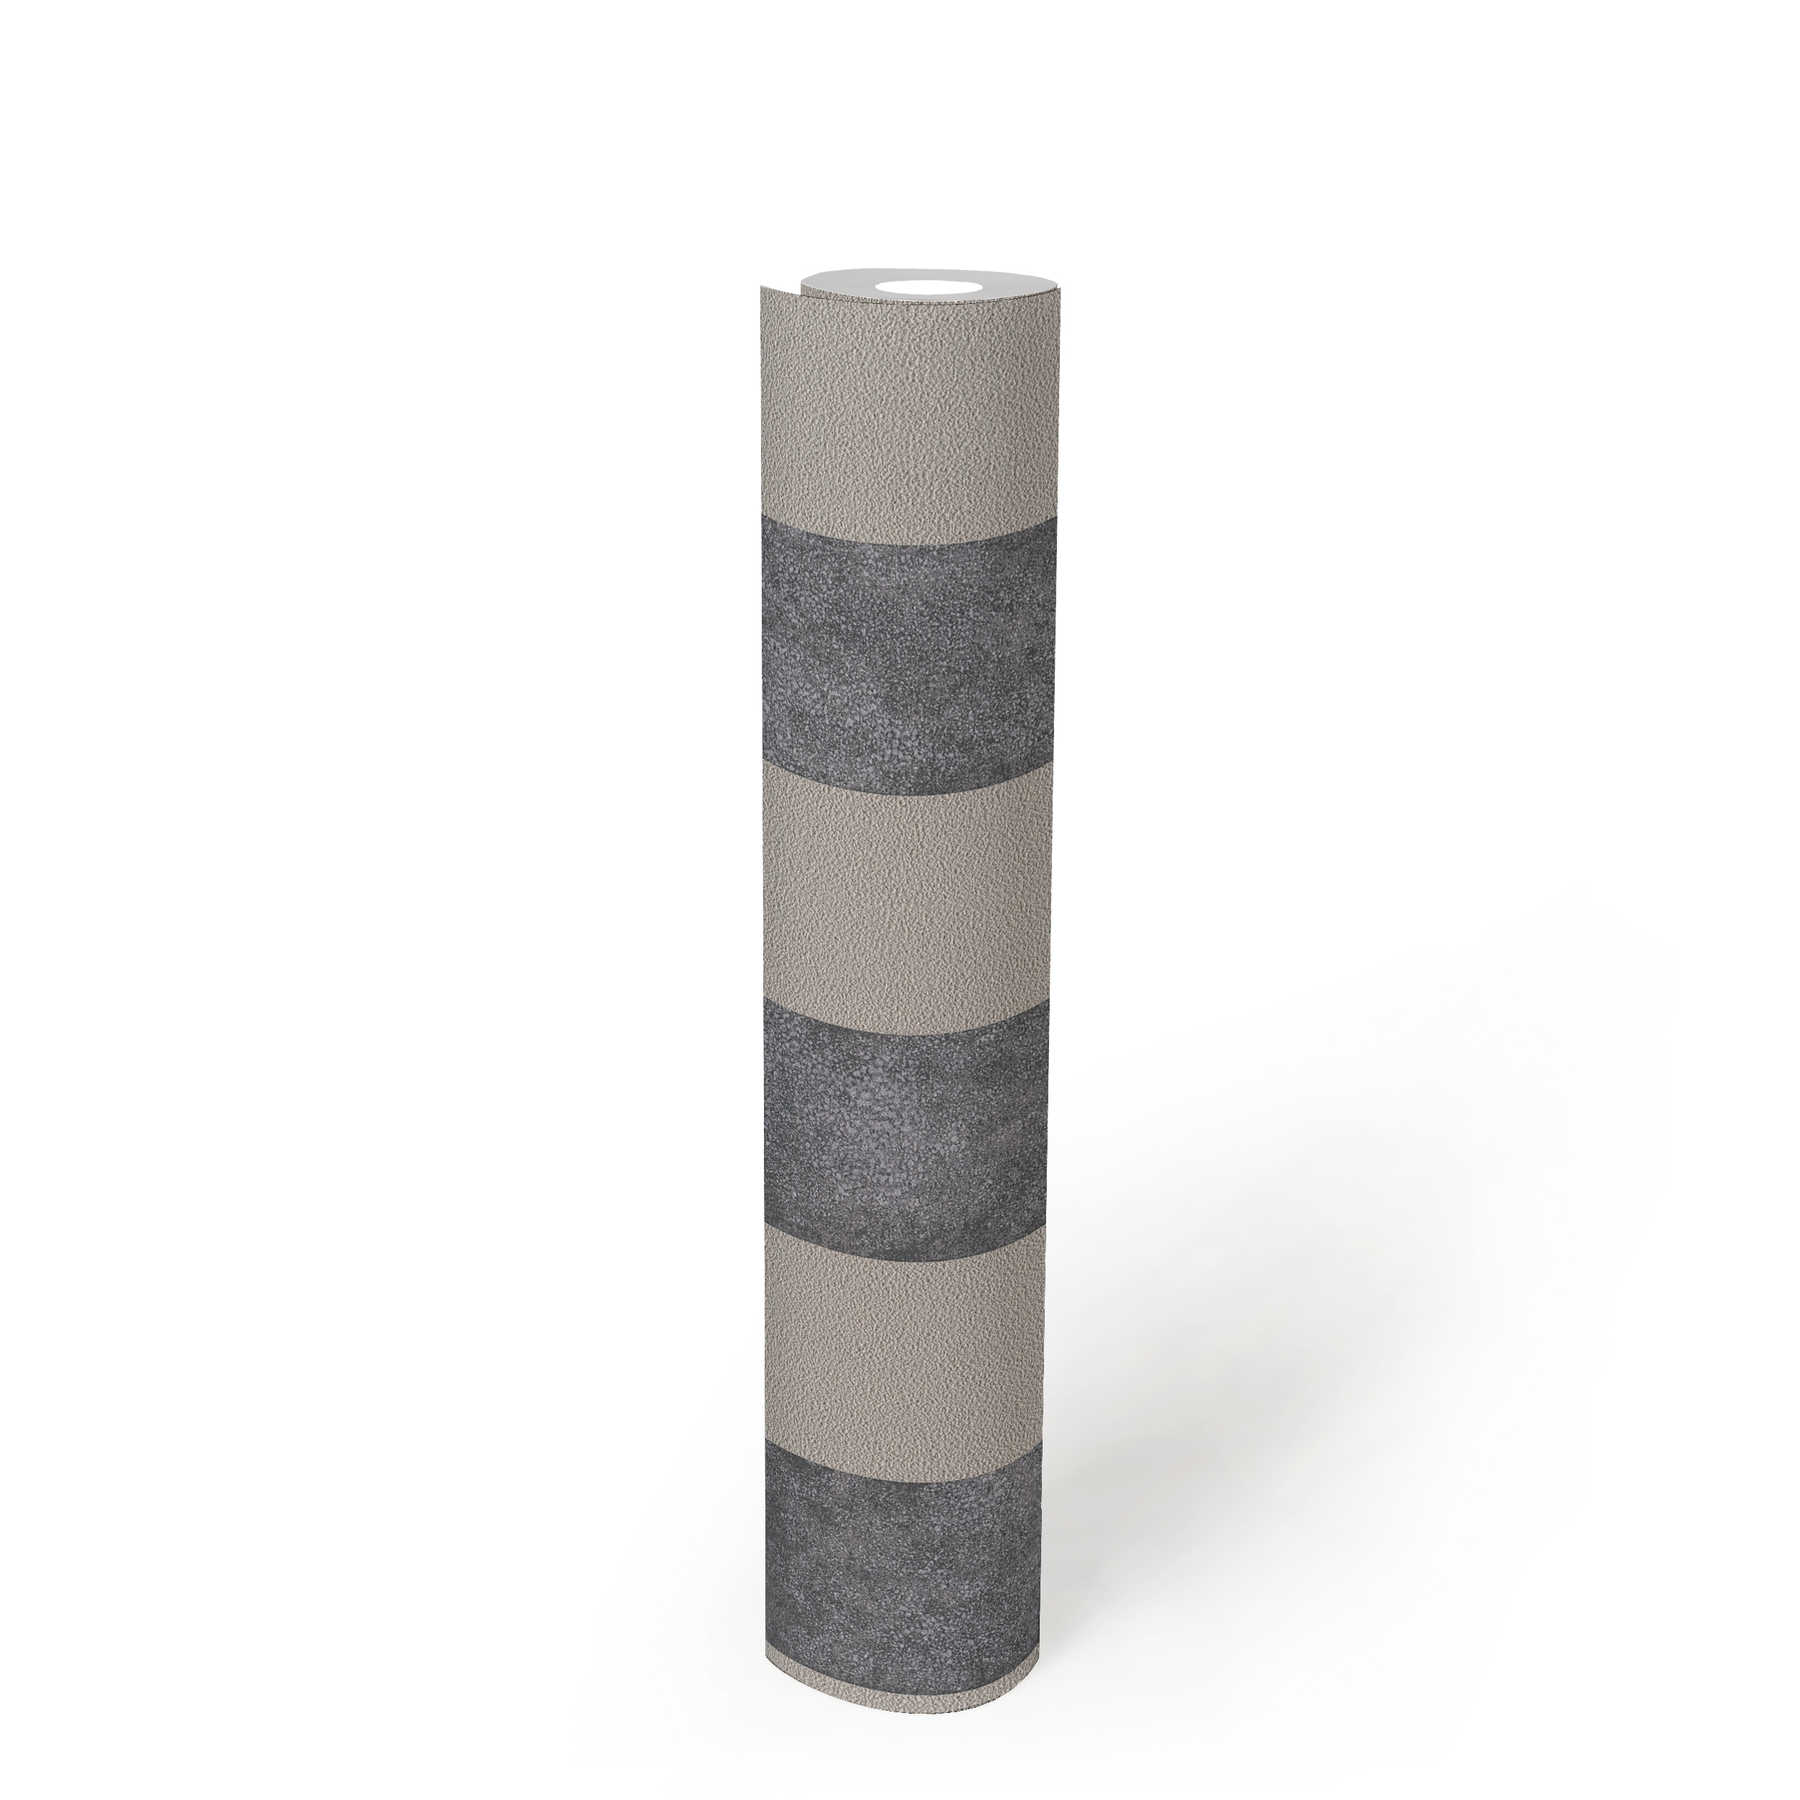             Carta da parati a righe a blocchi con motivo a colori e struttura - nero, grigio, beige
        